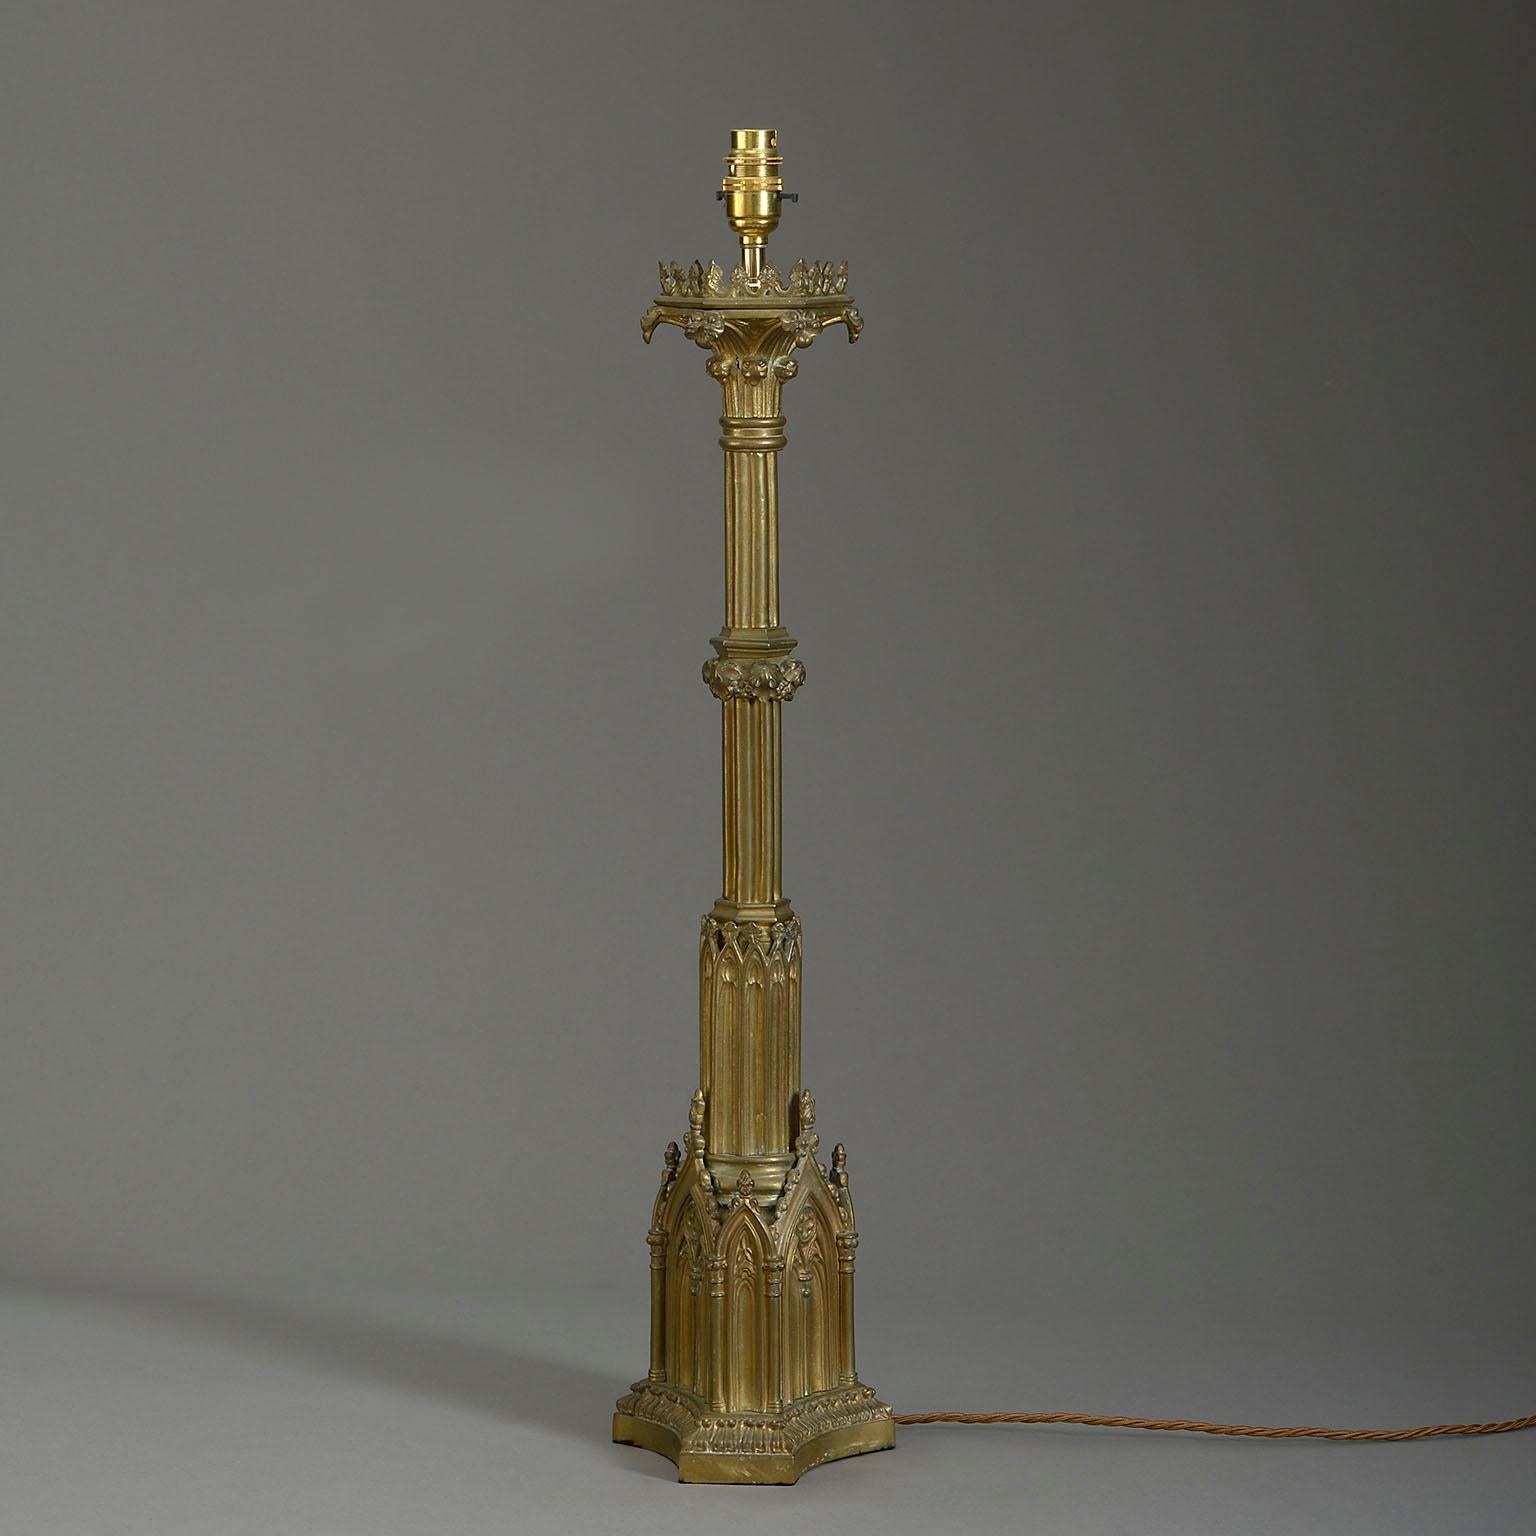 Lampe à colonne en laiton de la fin du dix-neuvième siècle dans le goût gothique, la tige de la colonne en grappe reposant sur une base de plinthe triforme avec des arcs de traçage aveugles.

Les dimensions se rapportent uniquement aux éléments en